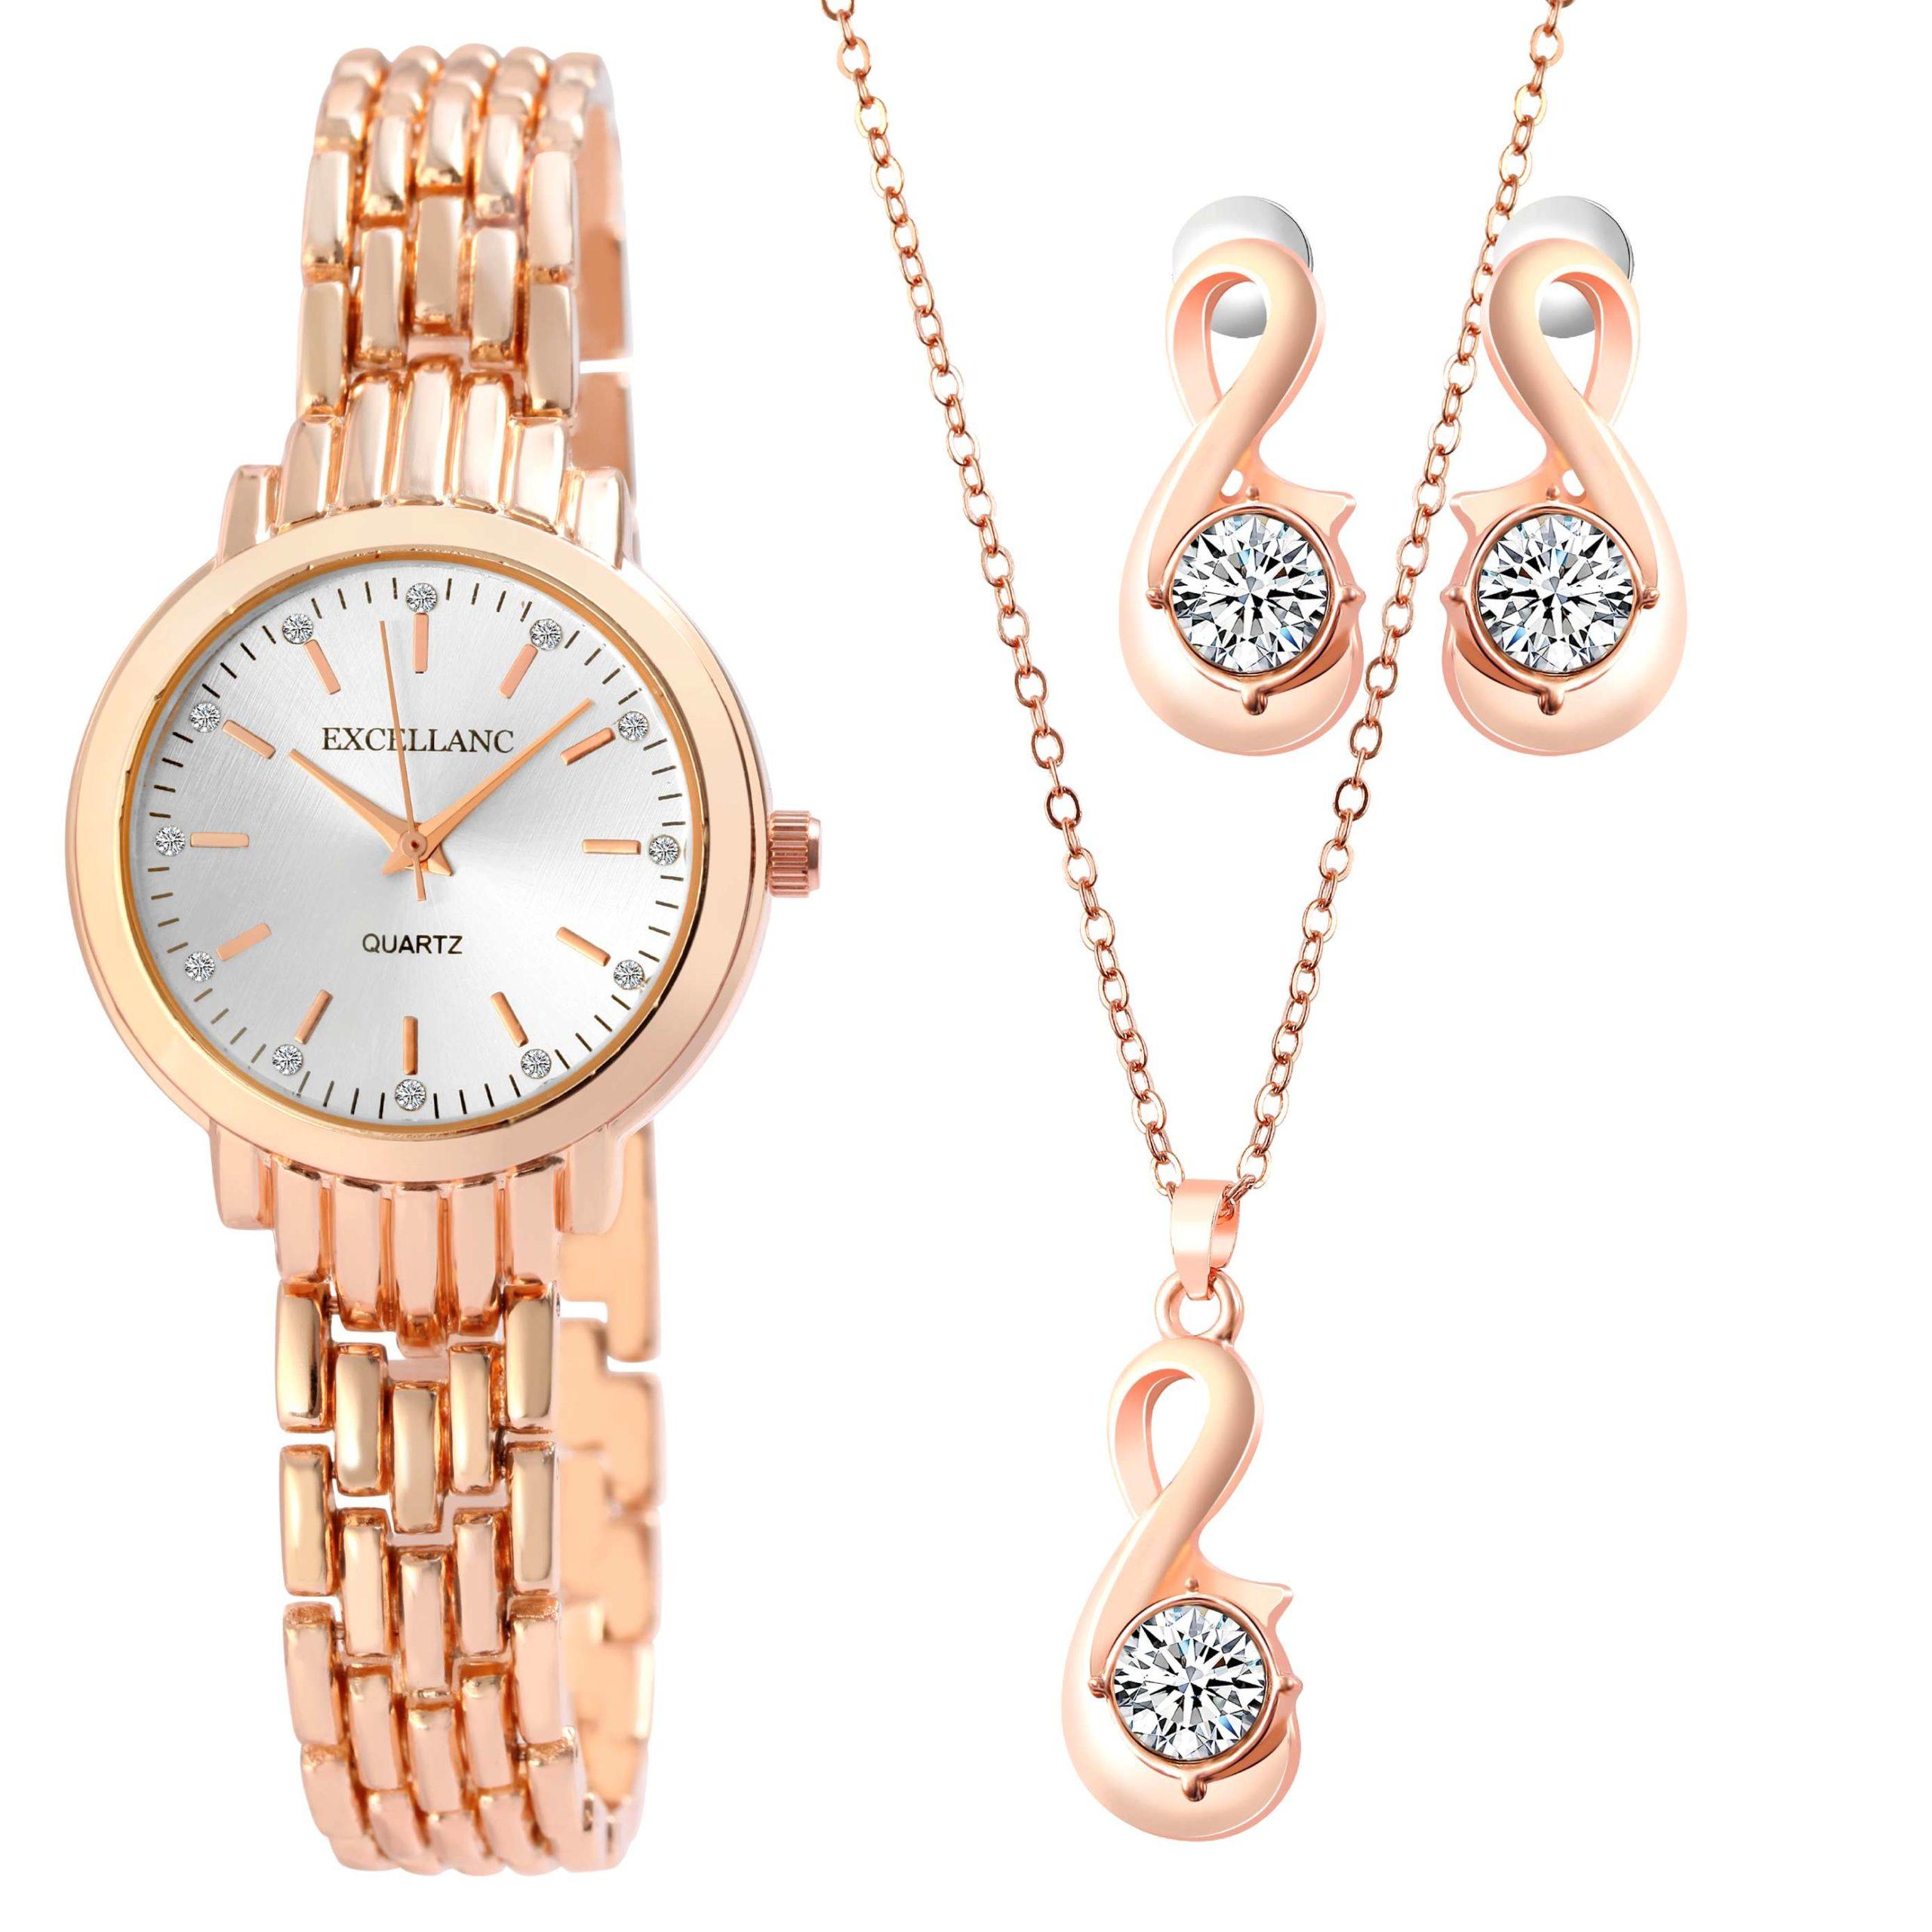 Darčeková súprava dámskych hodiniek náhrdelníka a náušníc